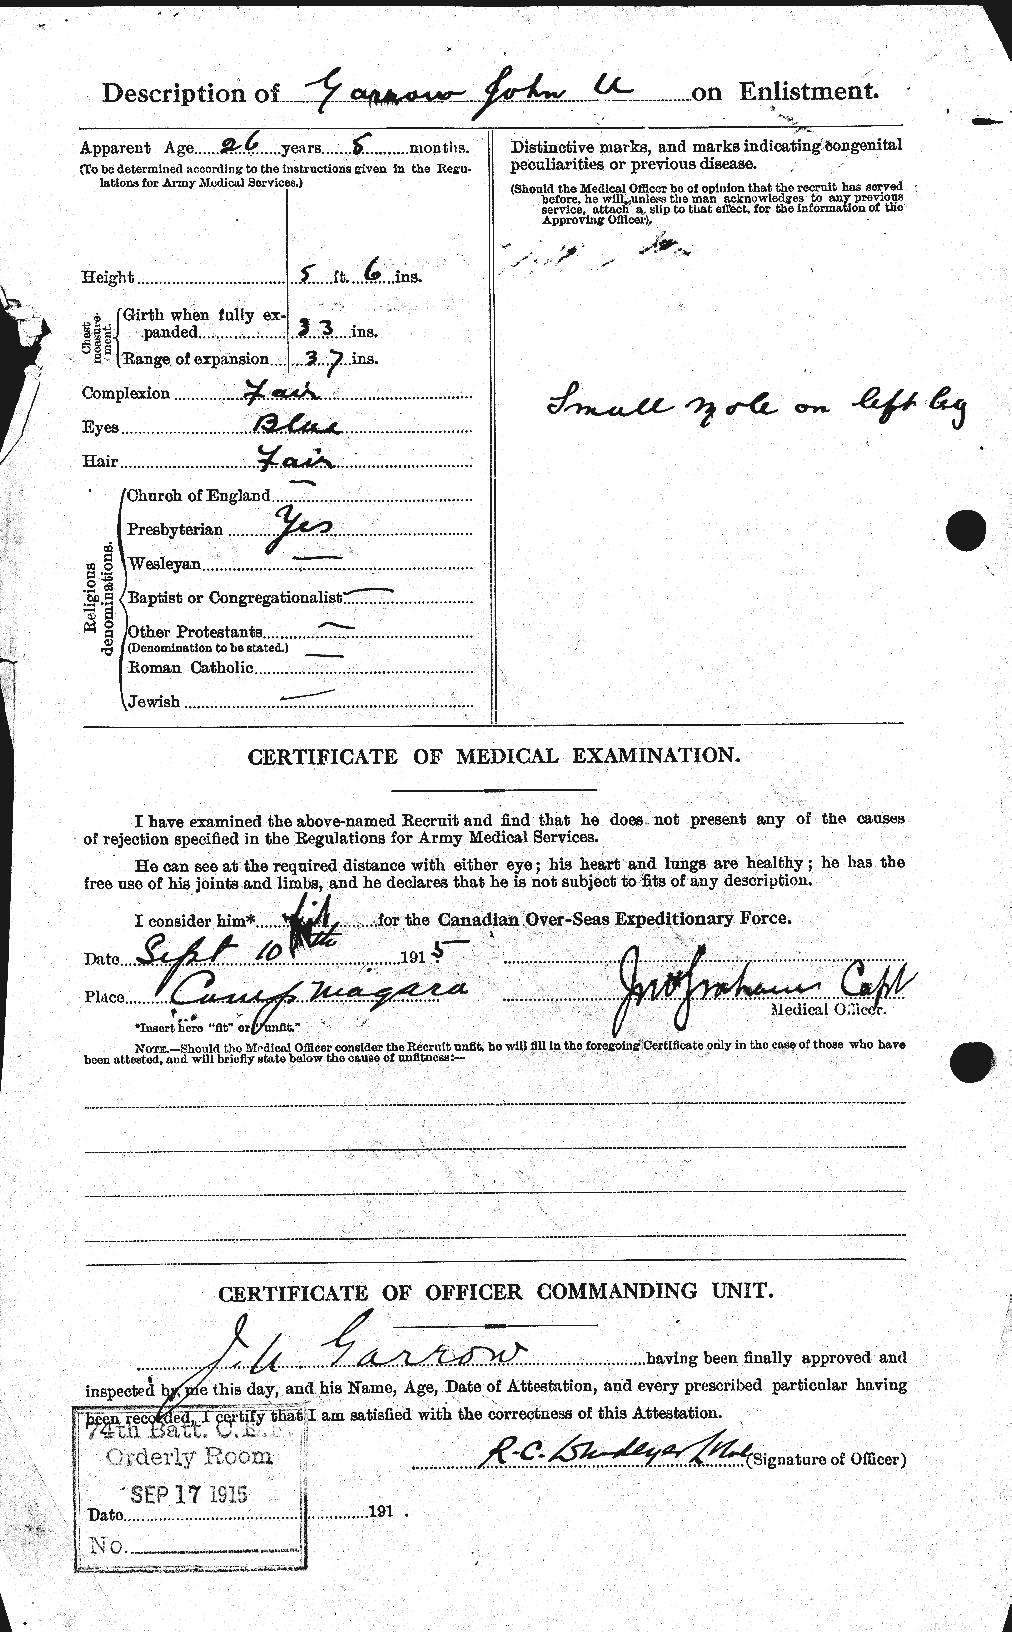 Dossiers du Personnel de la Première Guerre mondiale - CEC 343476b